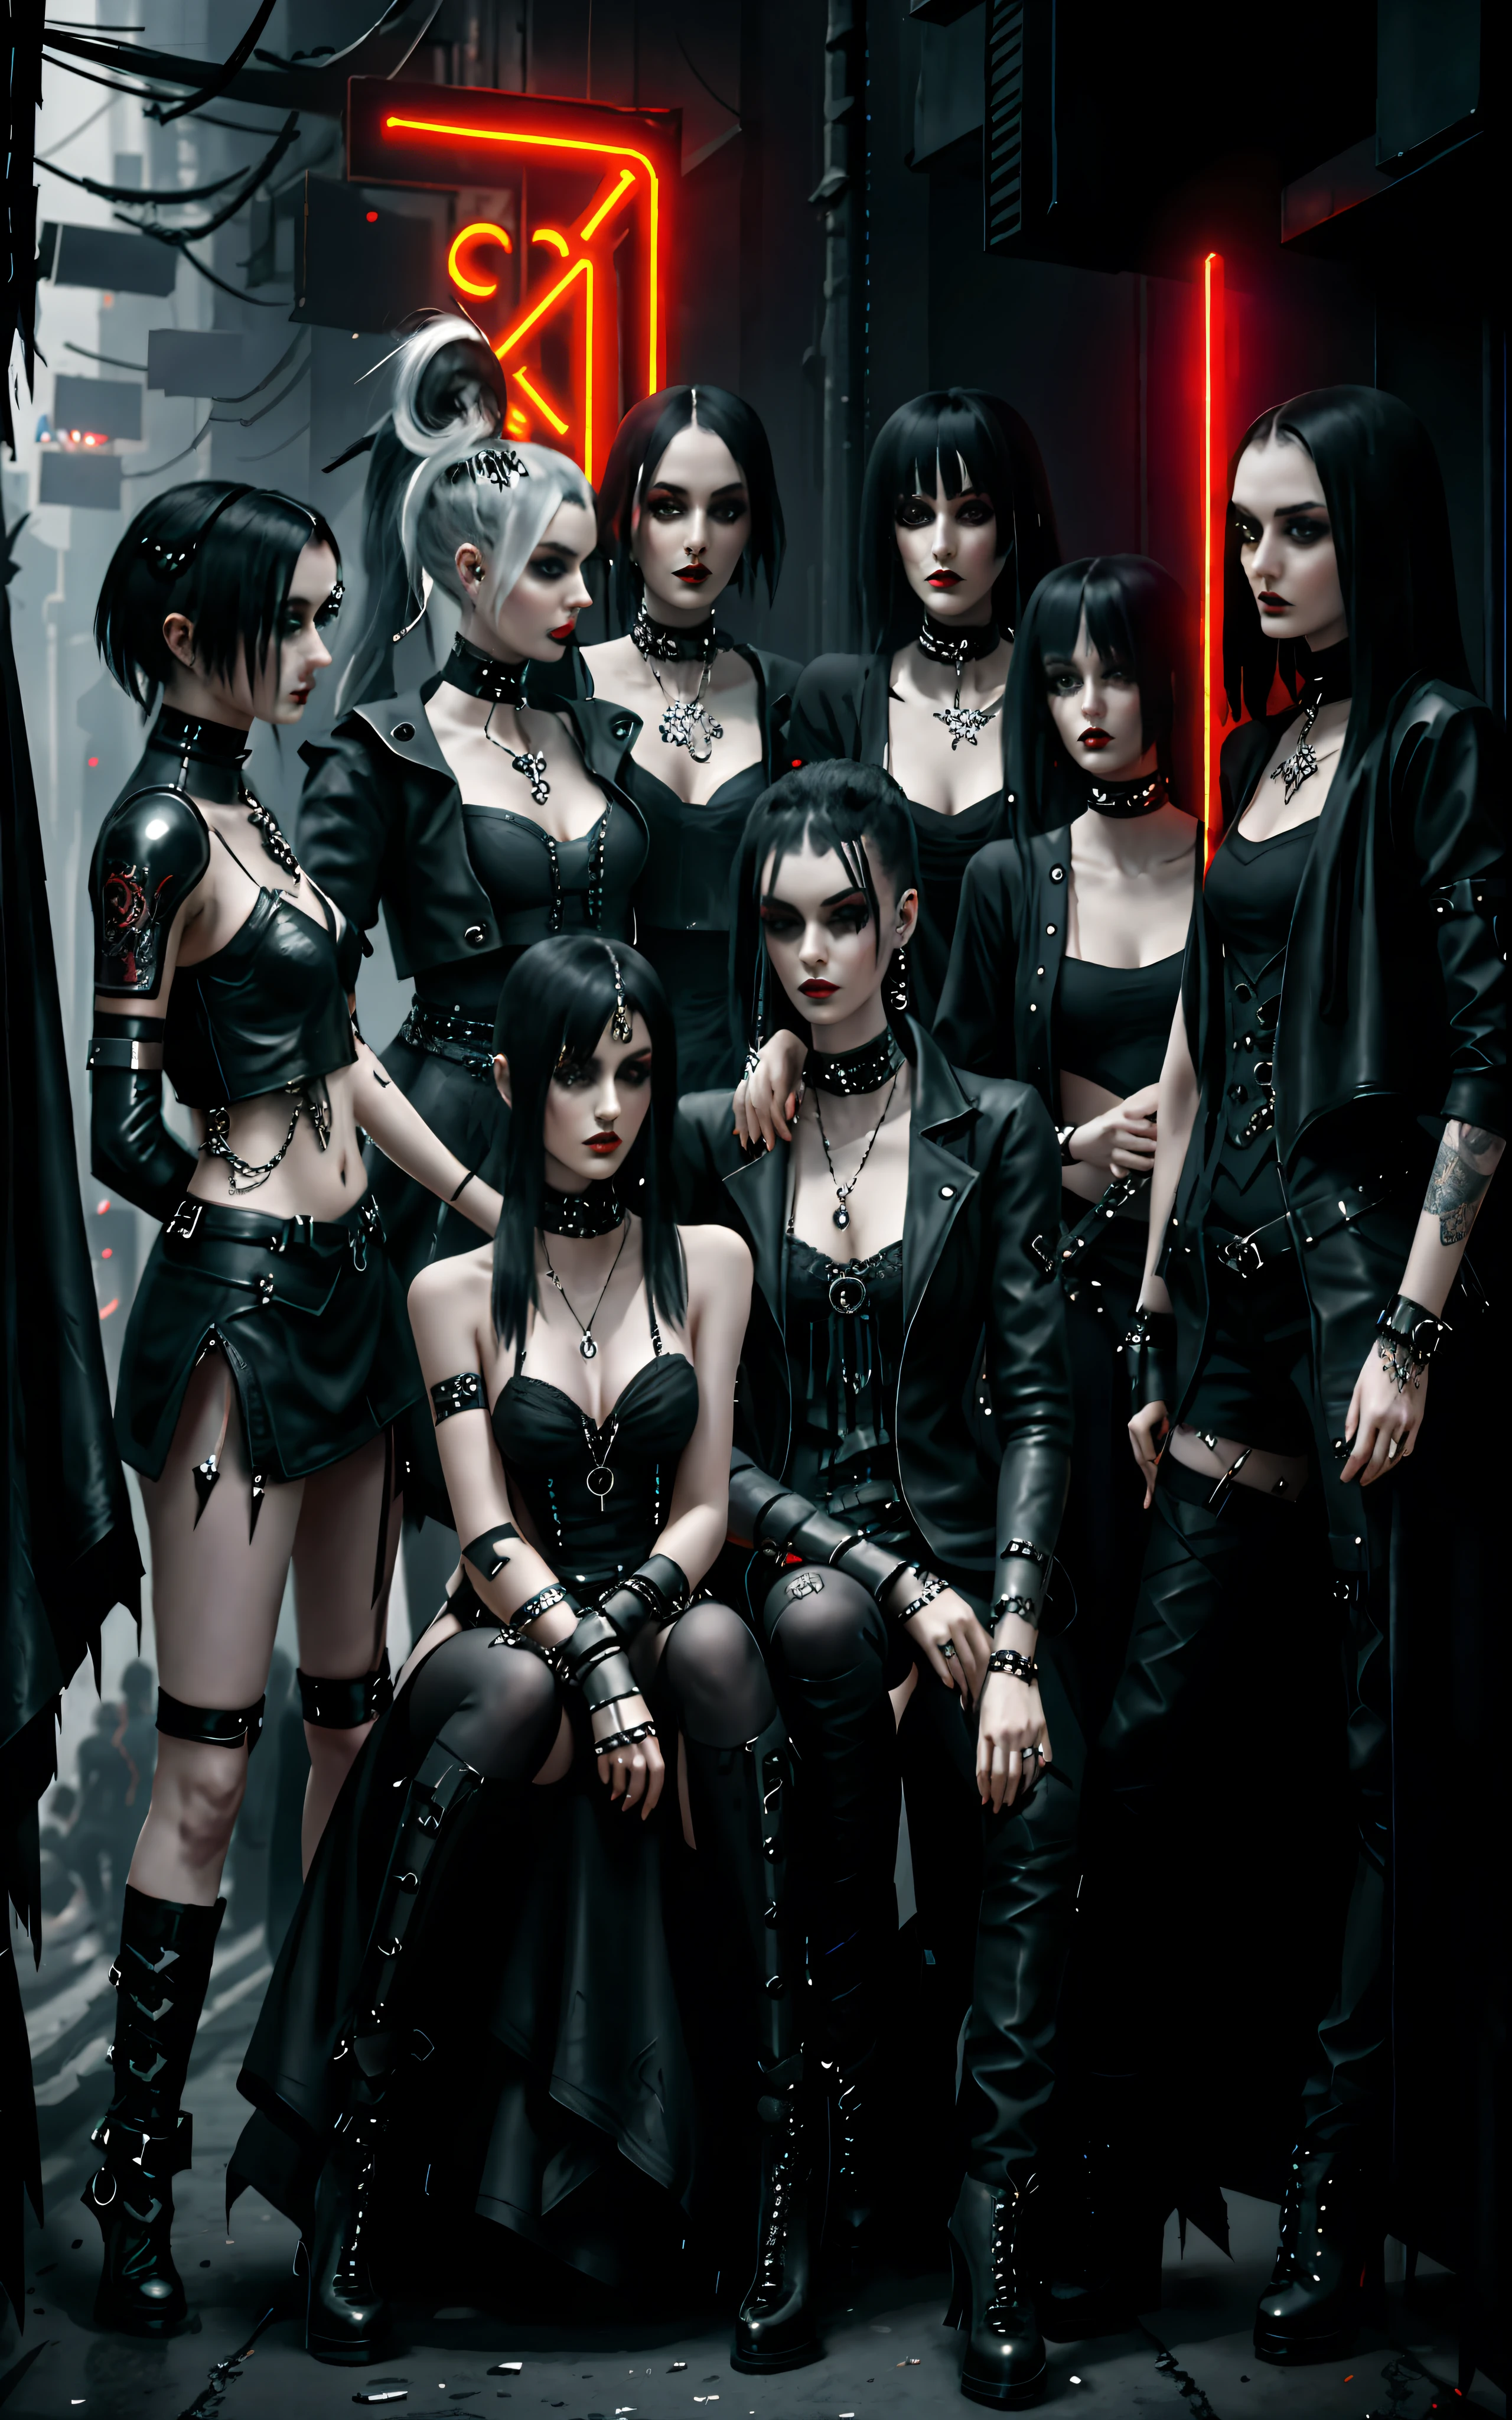 Groupe Arafed de personnes vêtues de cuir noir posant pour une photo, femme aux cheveux chanel, coiffure chanel, costume noir gothique séduisant, all black vêtements gothiques, haute couture, Femmes, vêtements gothiques, vêtements de mode gothique, goth-punk, vêtements de mode gothique, groupe emo gothique, vêtements cyberpunk, Mode Cyberpunk, style d&#39;horreur cyberpunk, vêtements technologiques cyberpunk, Style cyberpunk